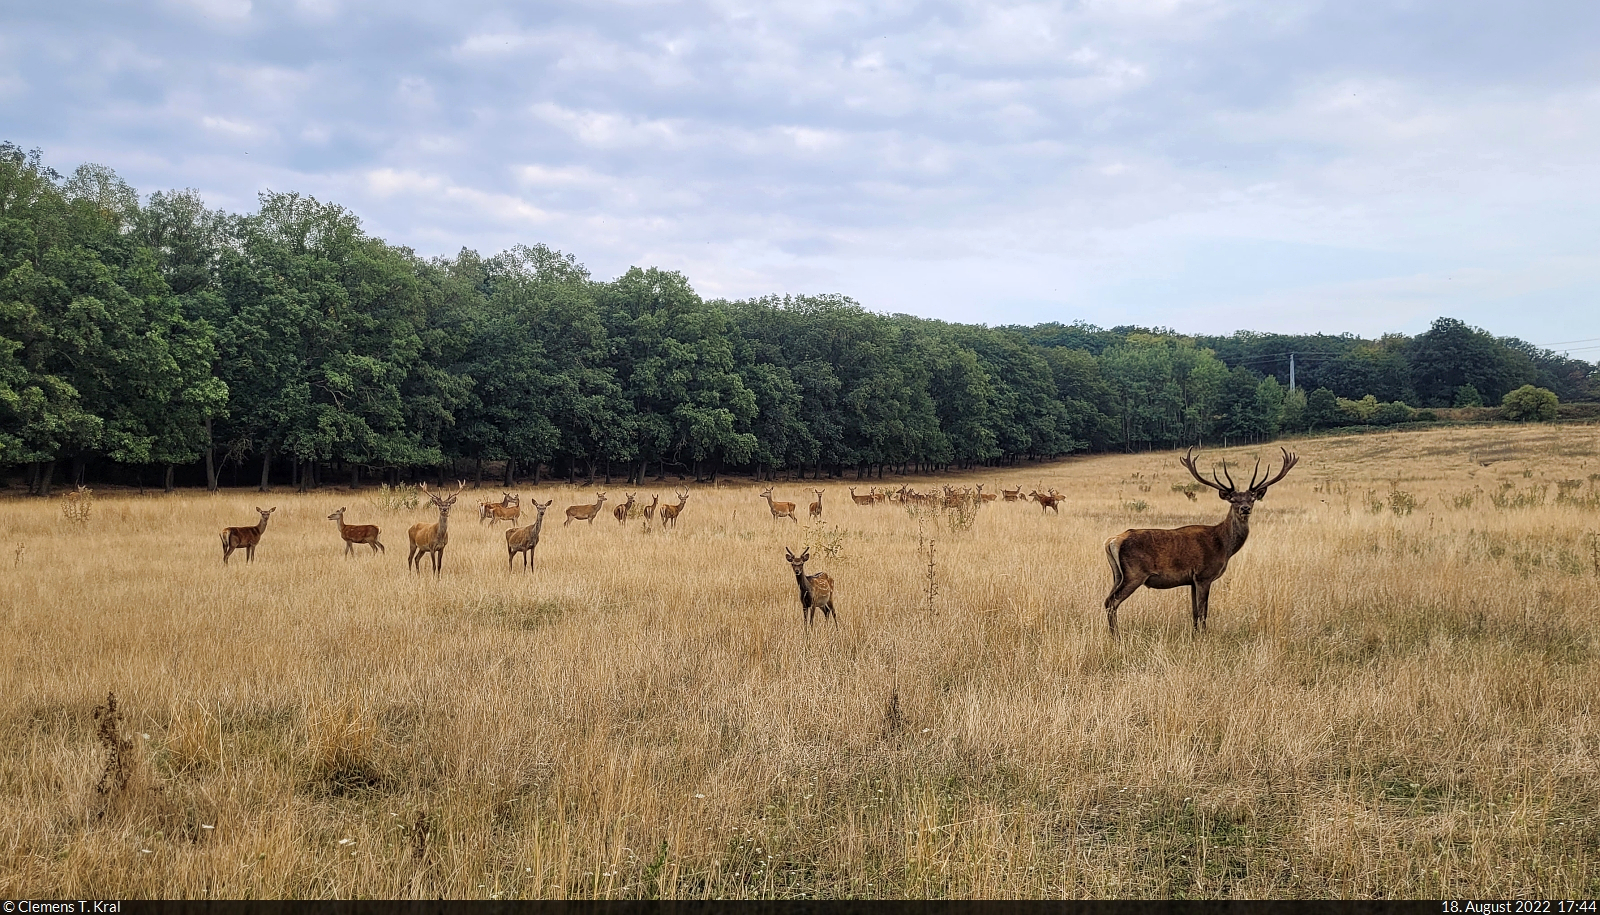 So viele Rehe und Hirsche auf einmal sieht man selten. Dieser Blick gelang durch einen Zaun am Othaler Wald, einem Naturschutzgebiet südlich von Riestedt (Sangerhausen).

🕓 18.8.2022 | 17:44 Uhr